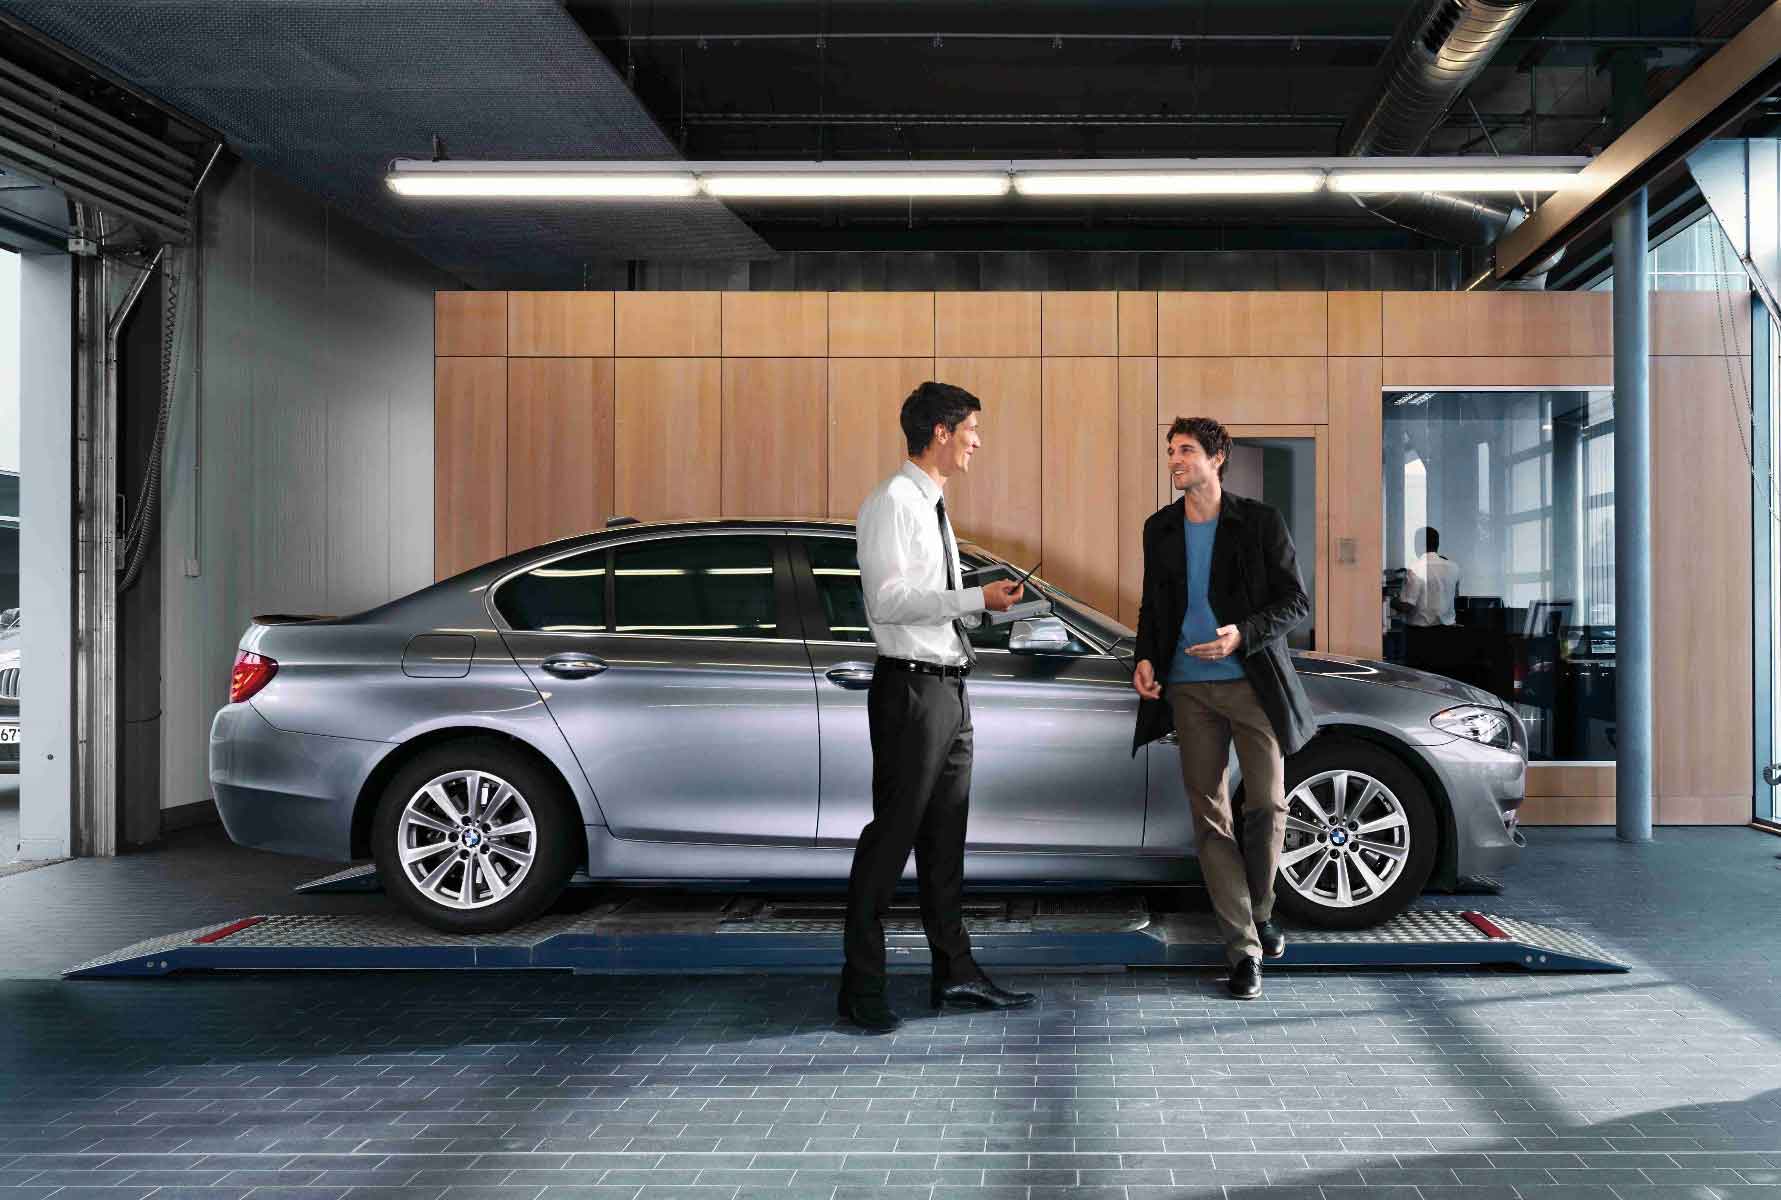 L'addetto alle vendite parla con i clienti e mostra l'abbonamento BMW.